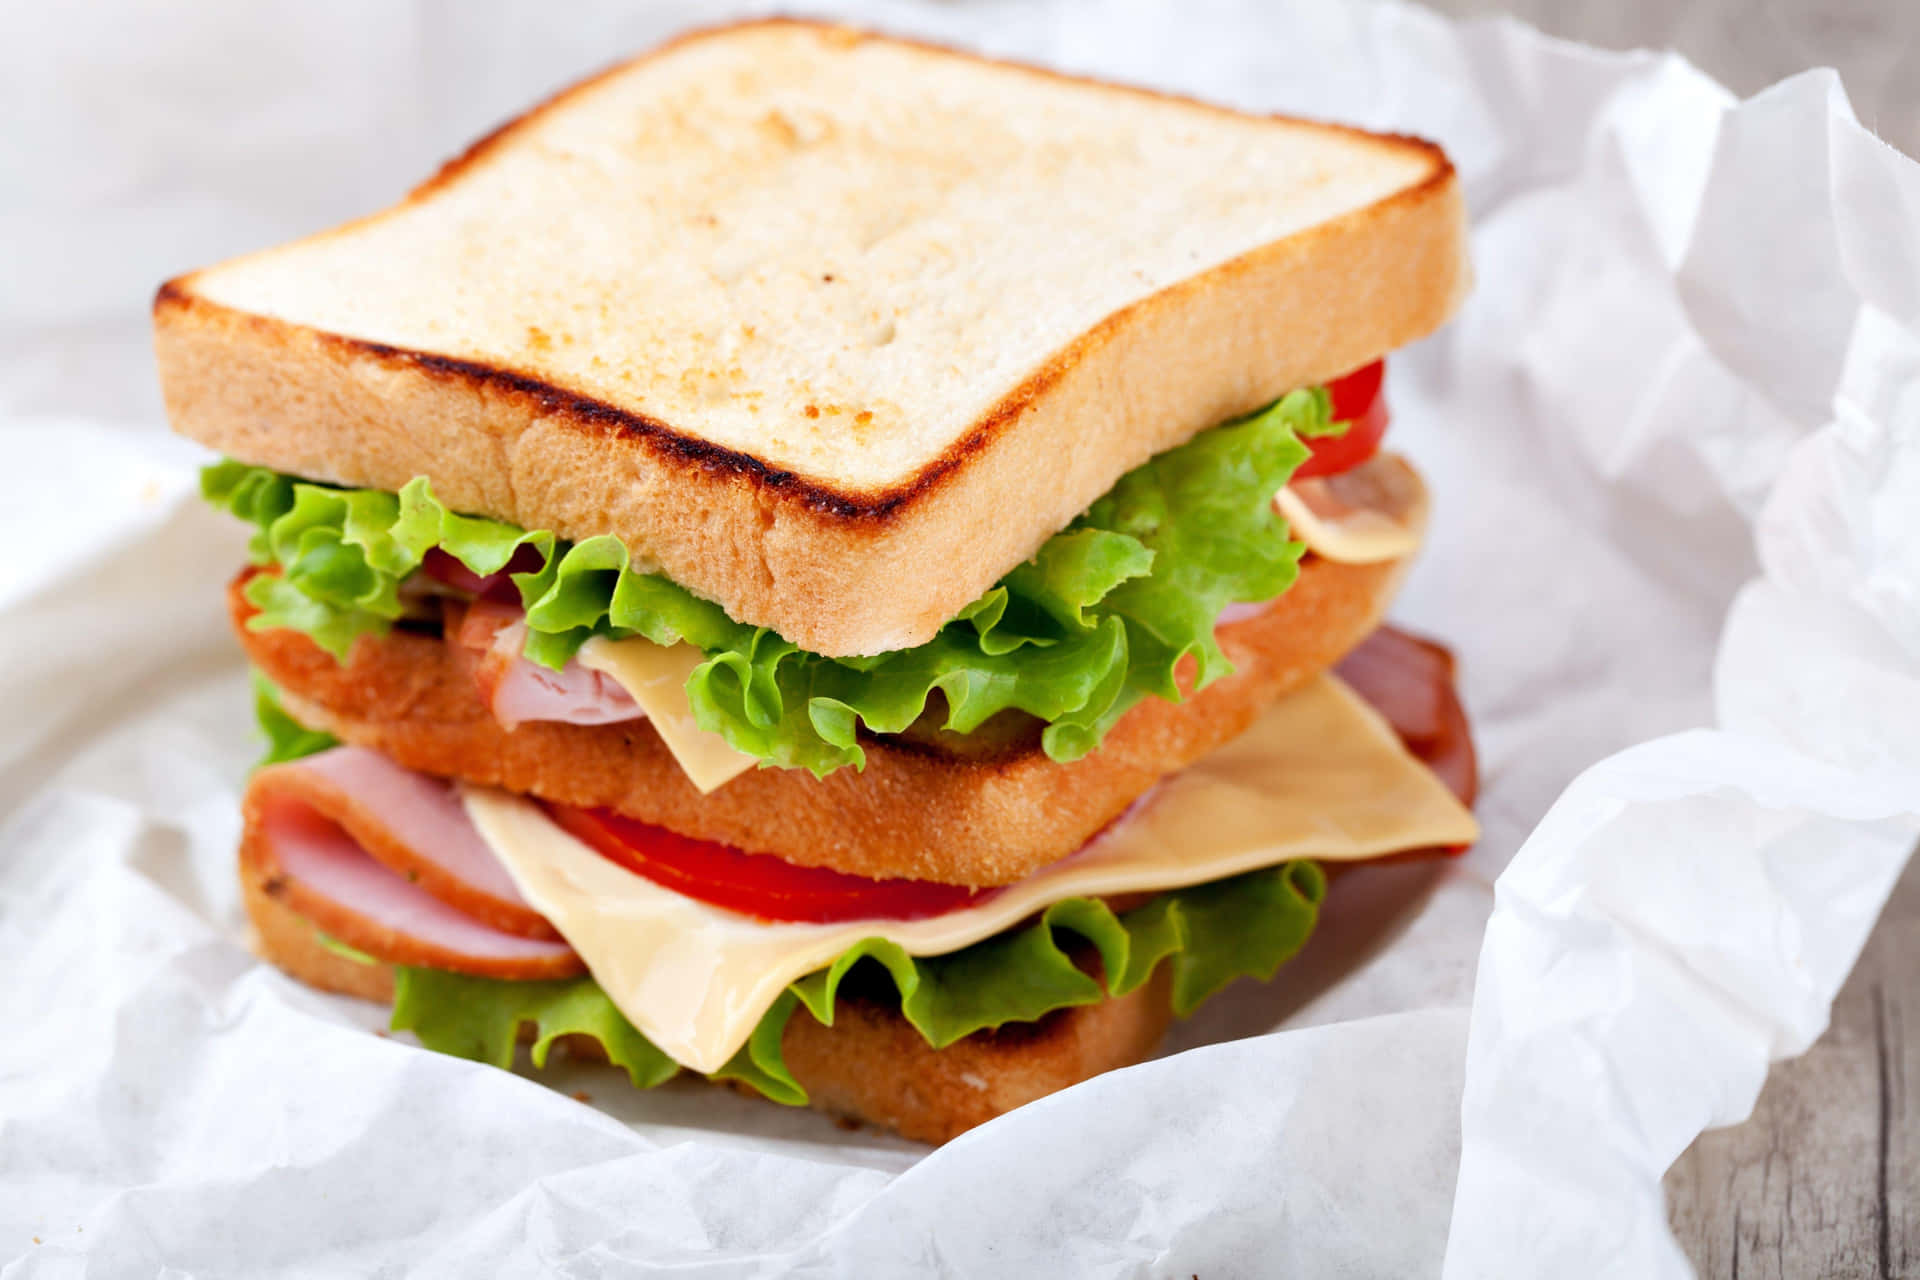 Disfrutade Un Delicioso Sándwich Que Puede Satisfacer Tu Hambre.